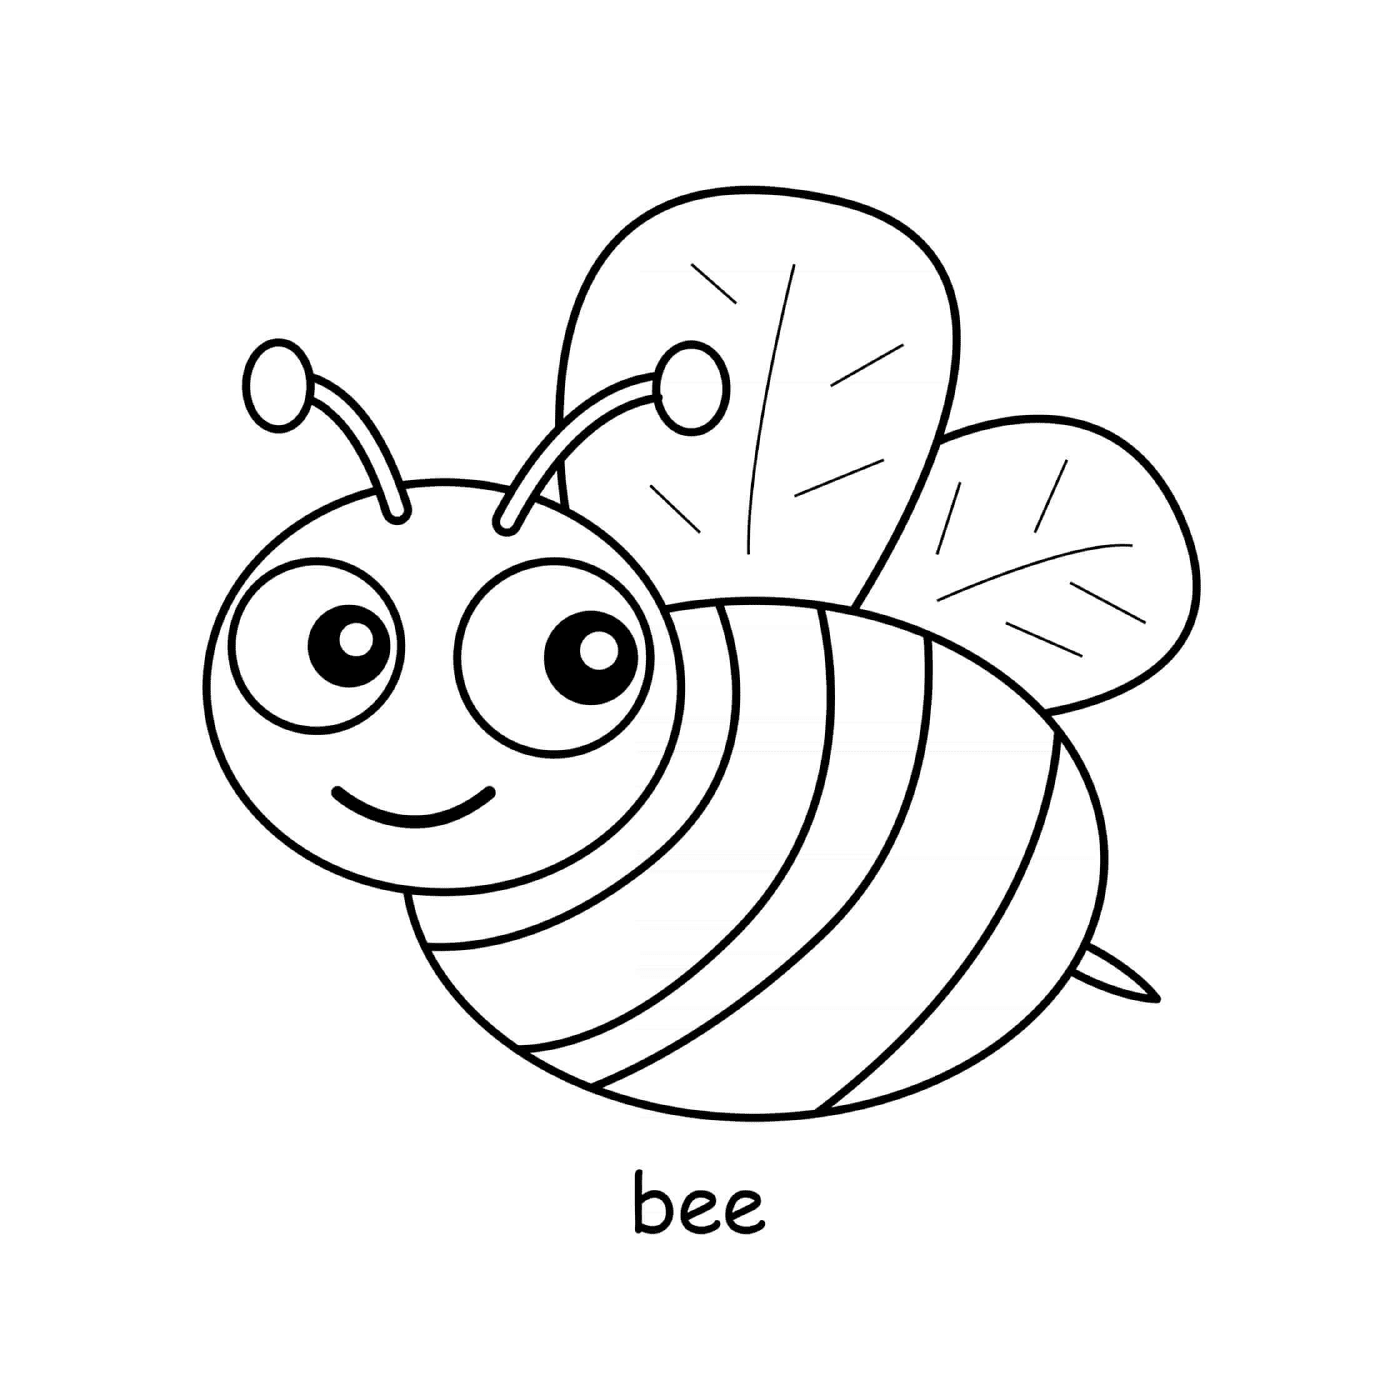  Bee está buscando miel 